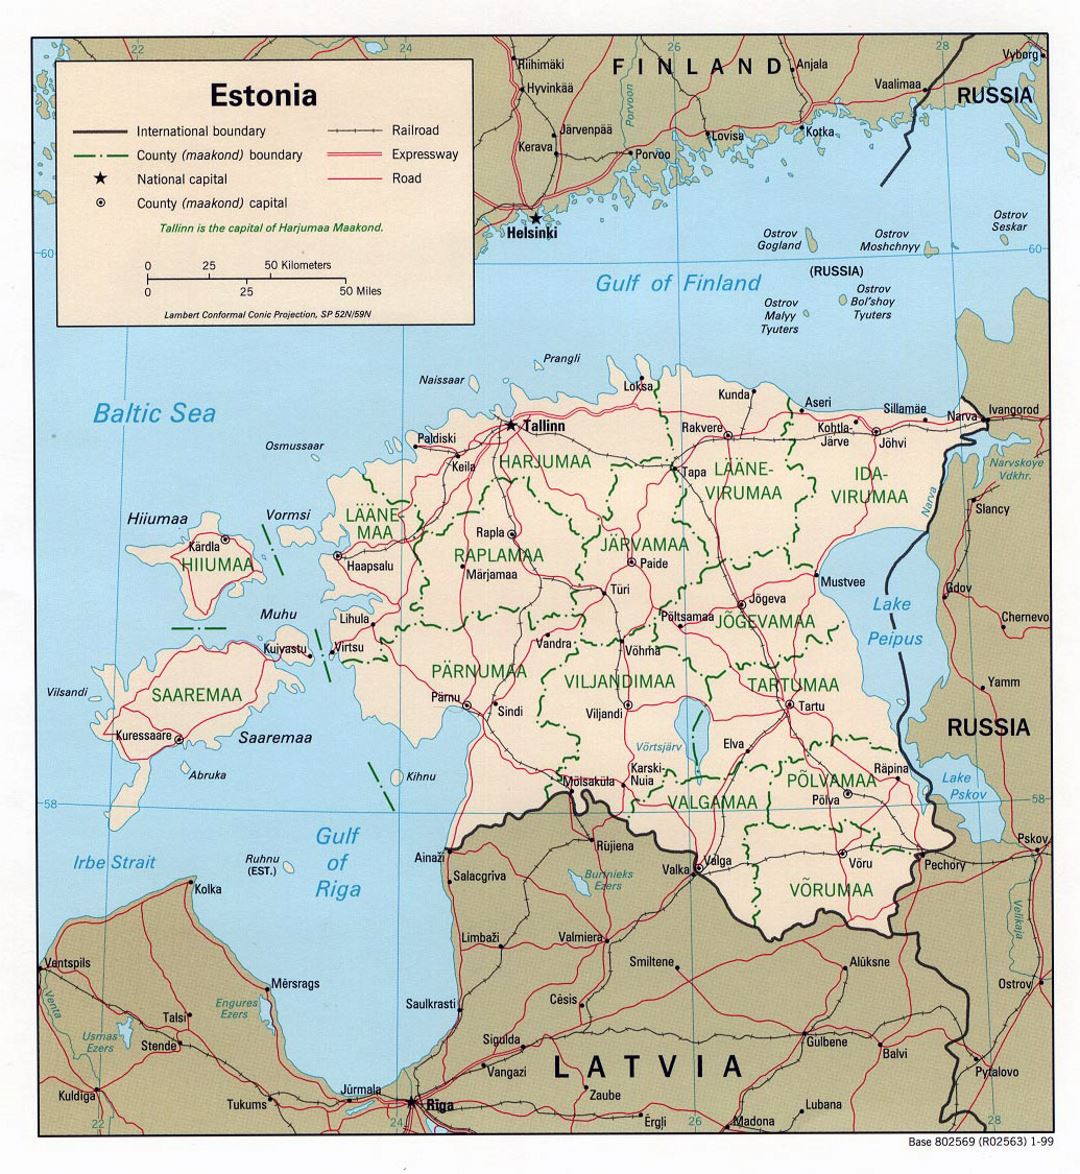 Mapa político y administrativo grande de Estonia con las carreteras y las principales ciudades -1999